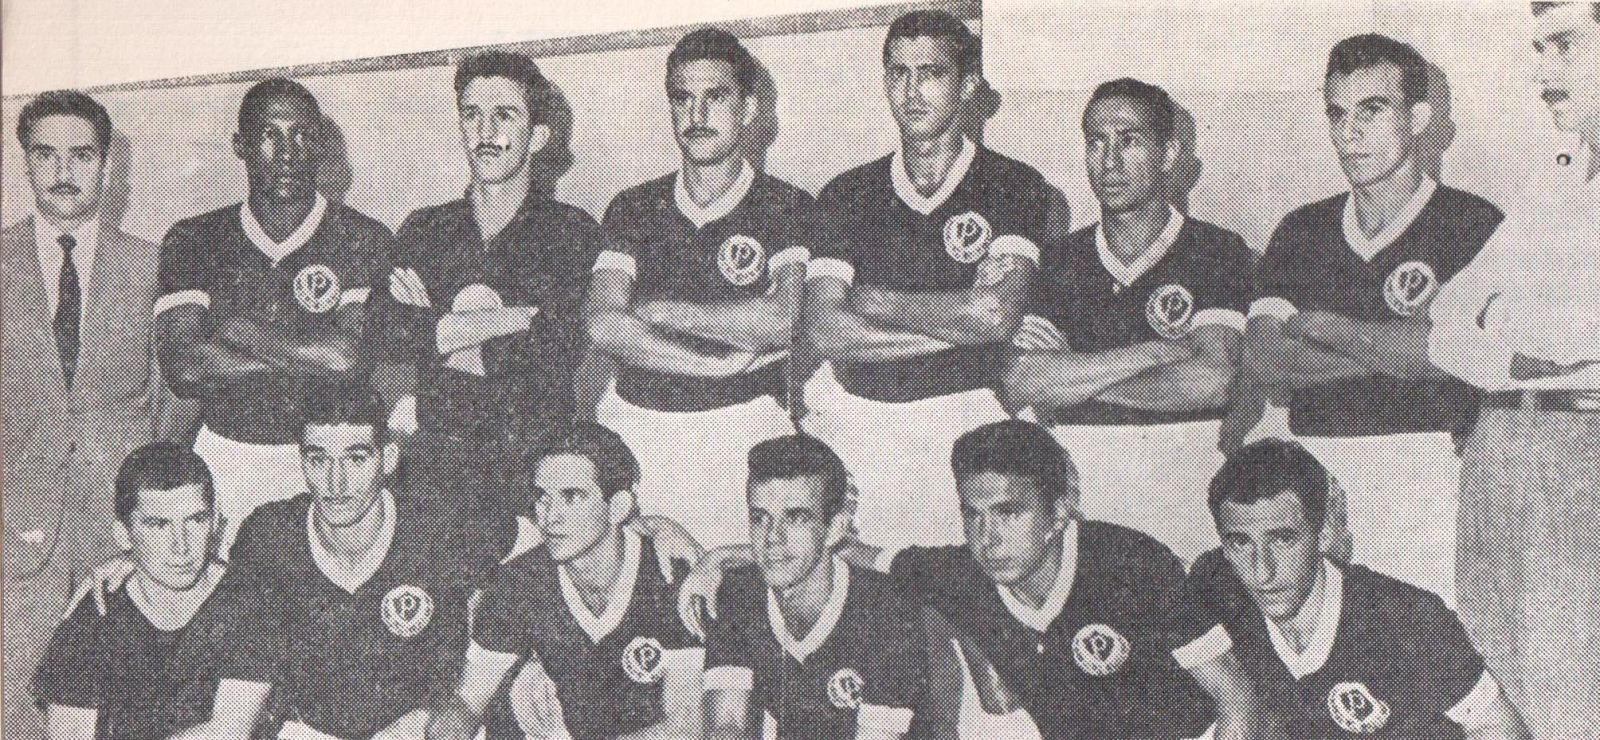 Os heróis do Verdão na conquista do 24º título paulista – Palmeiras